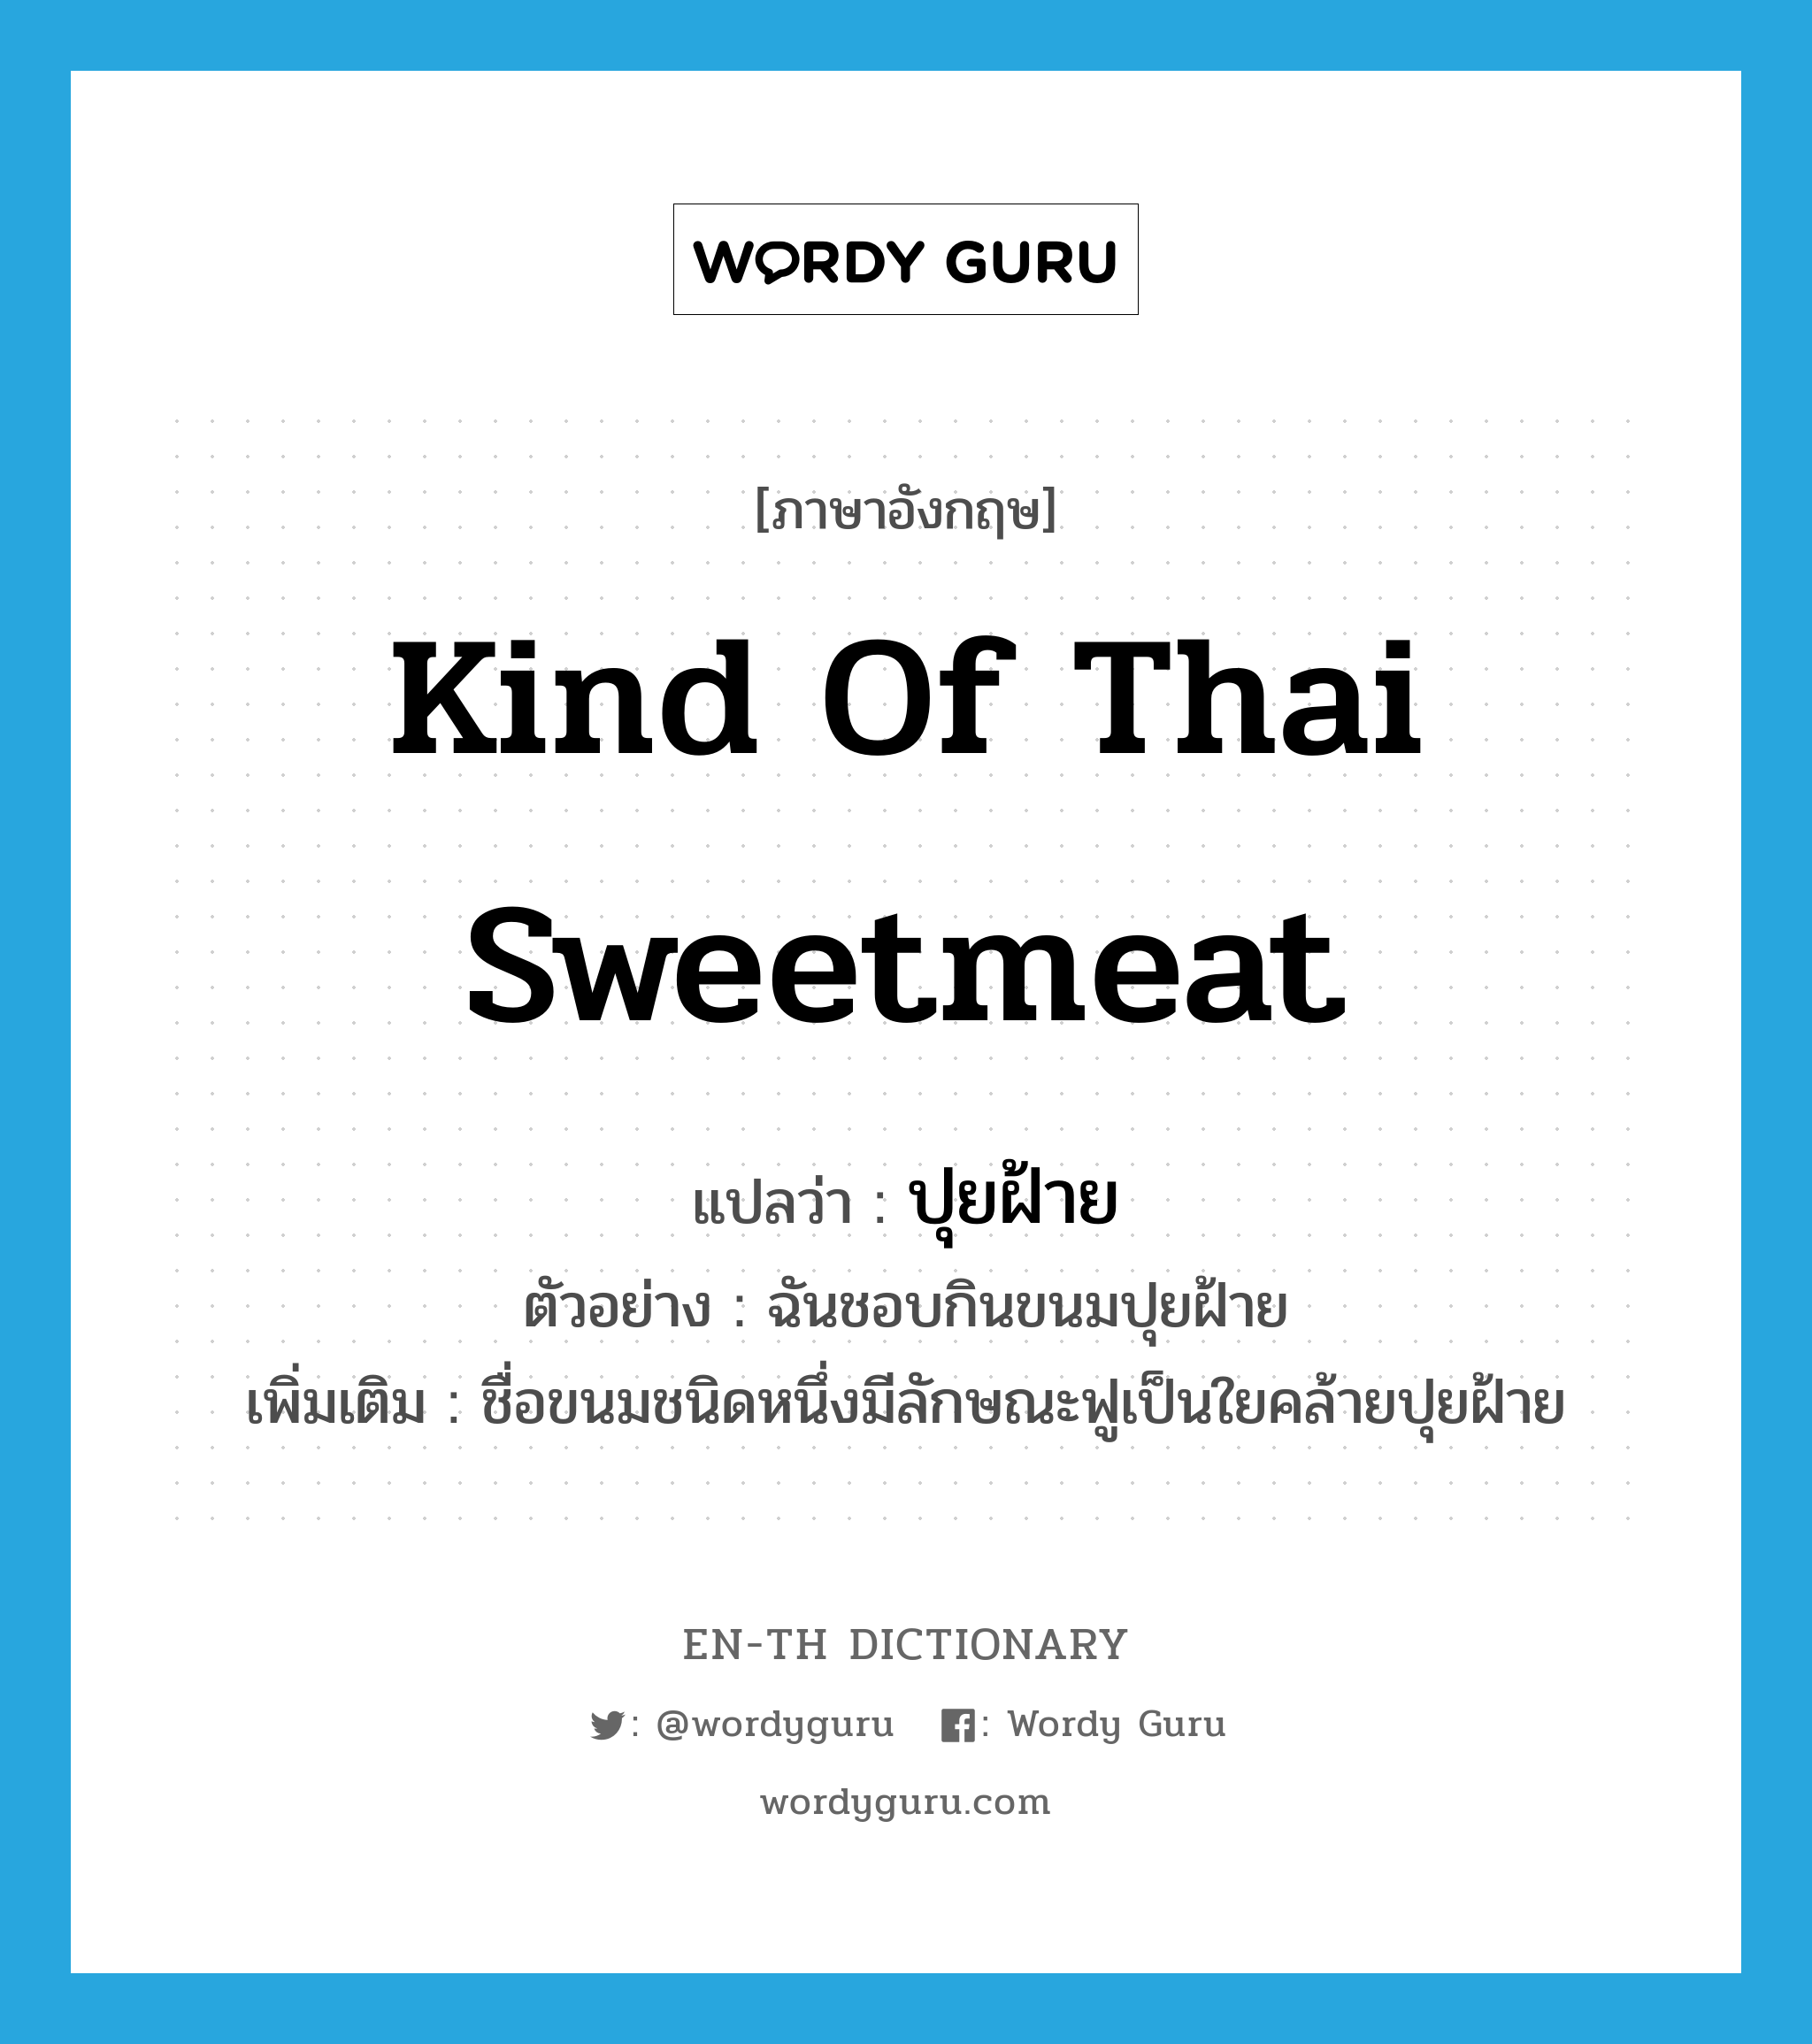 ปุยฝ้าย ภาษาอังกฤษ?, คำศัพท์ภาษาอังกฤษ ปุยฝ้าย แปลว่า kind of Thai sweetmeat ประเภท N ตัวอย่าง ฉันชอบกินขนมปุยฝ้าย เพิ่มเติม ชื่อขนมชนิดหนึ่งมีลักษณะฟูเป็นใยคล้ายปุยฝ้าย หมวด N